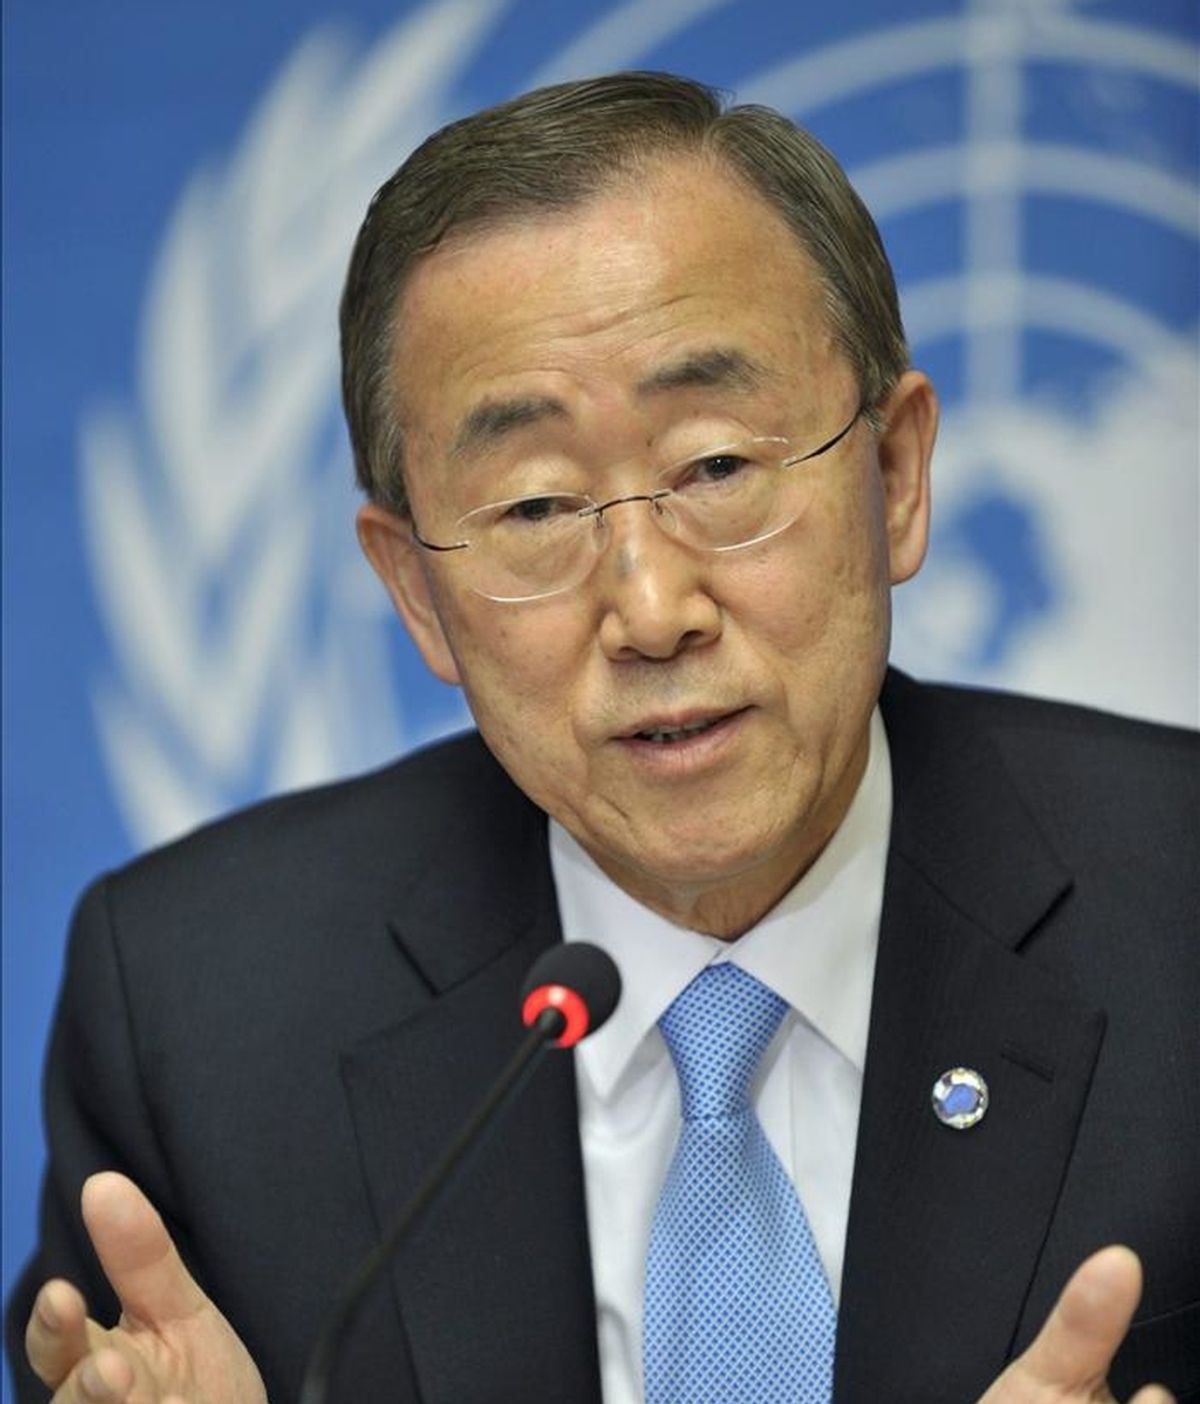 El secretario general de Naciones Unidas, Ban Ki-moon. EFE/Archivo